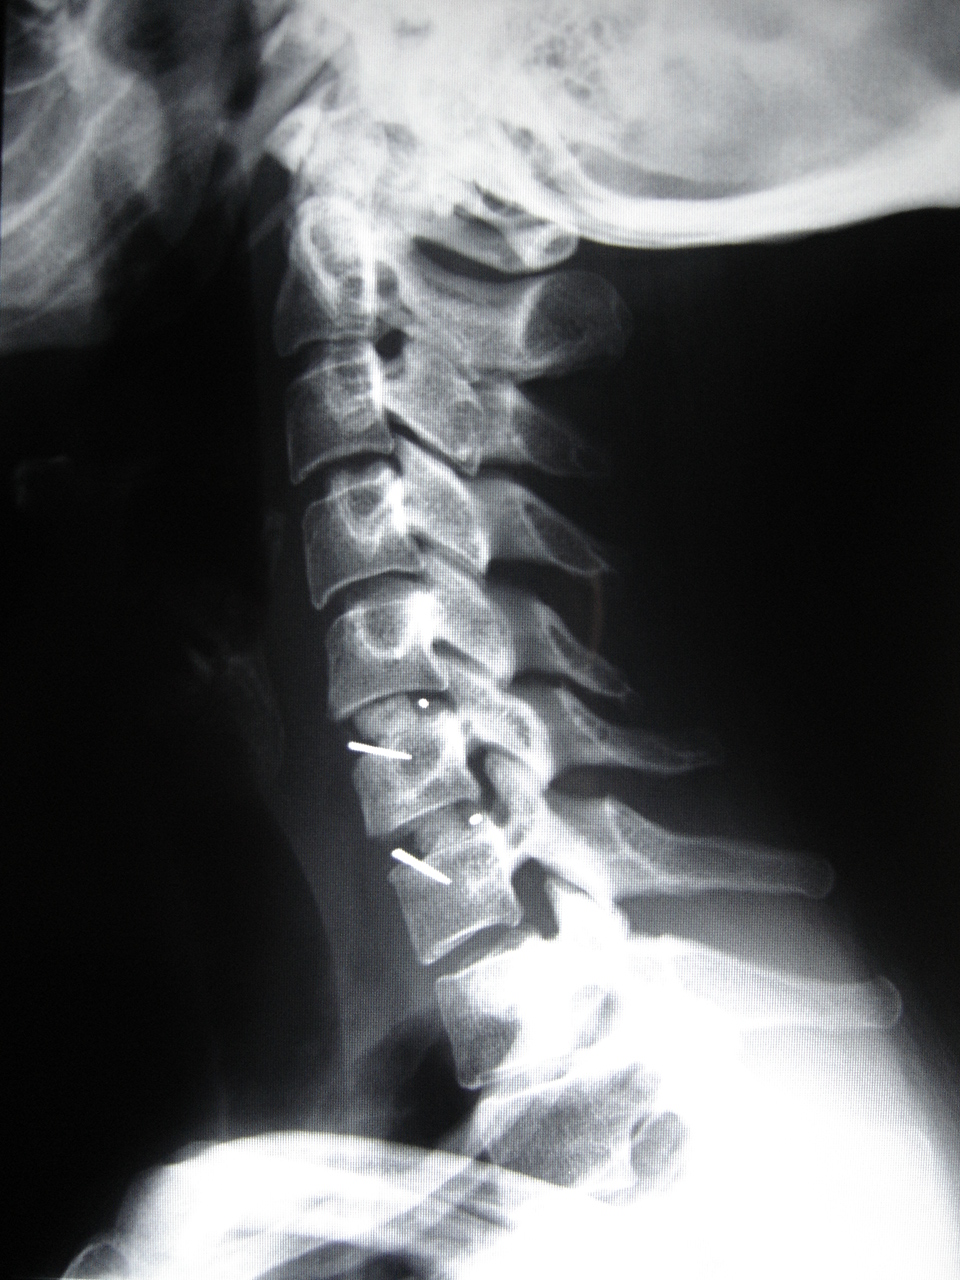 Ao lado, imagem de raio-x evidenciando Artrodese cervical de dois níveis com colocação de espaçadores 'cages', com enxerto ósseo.